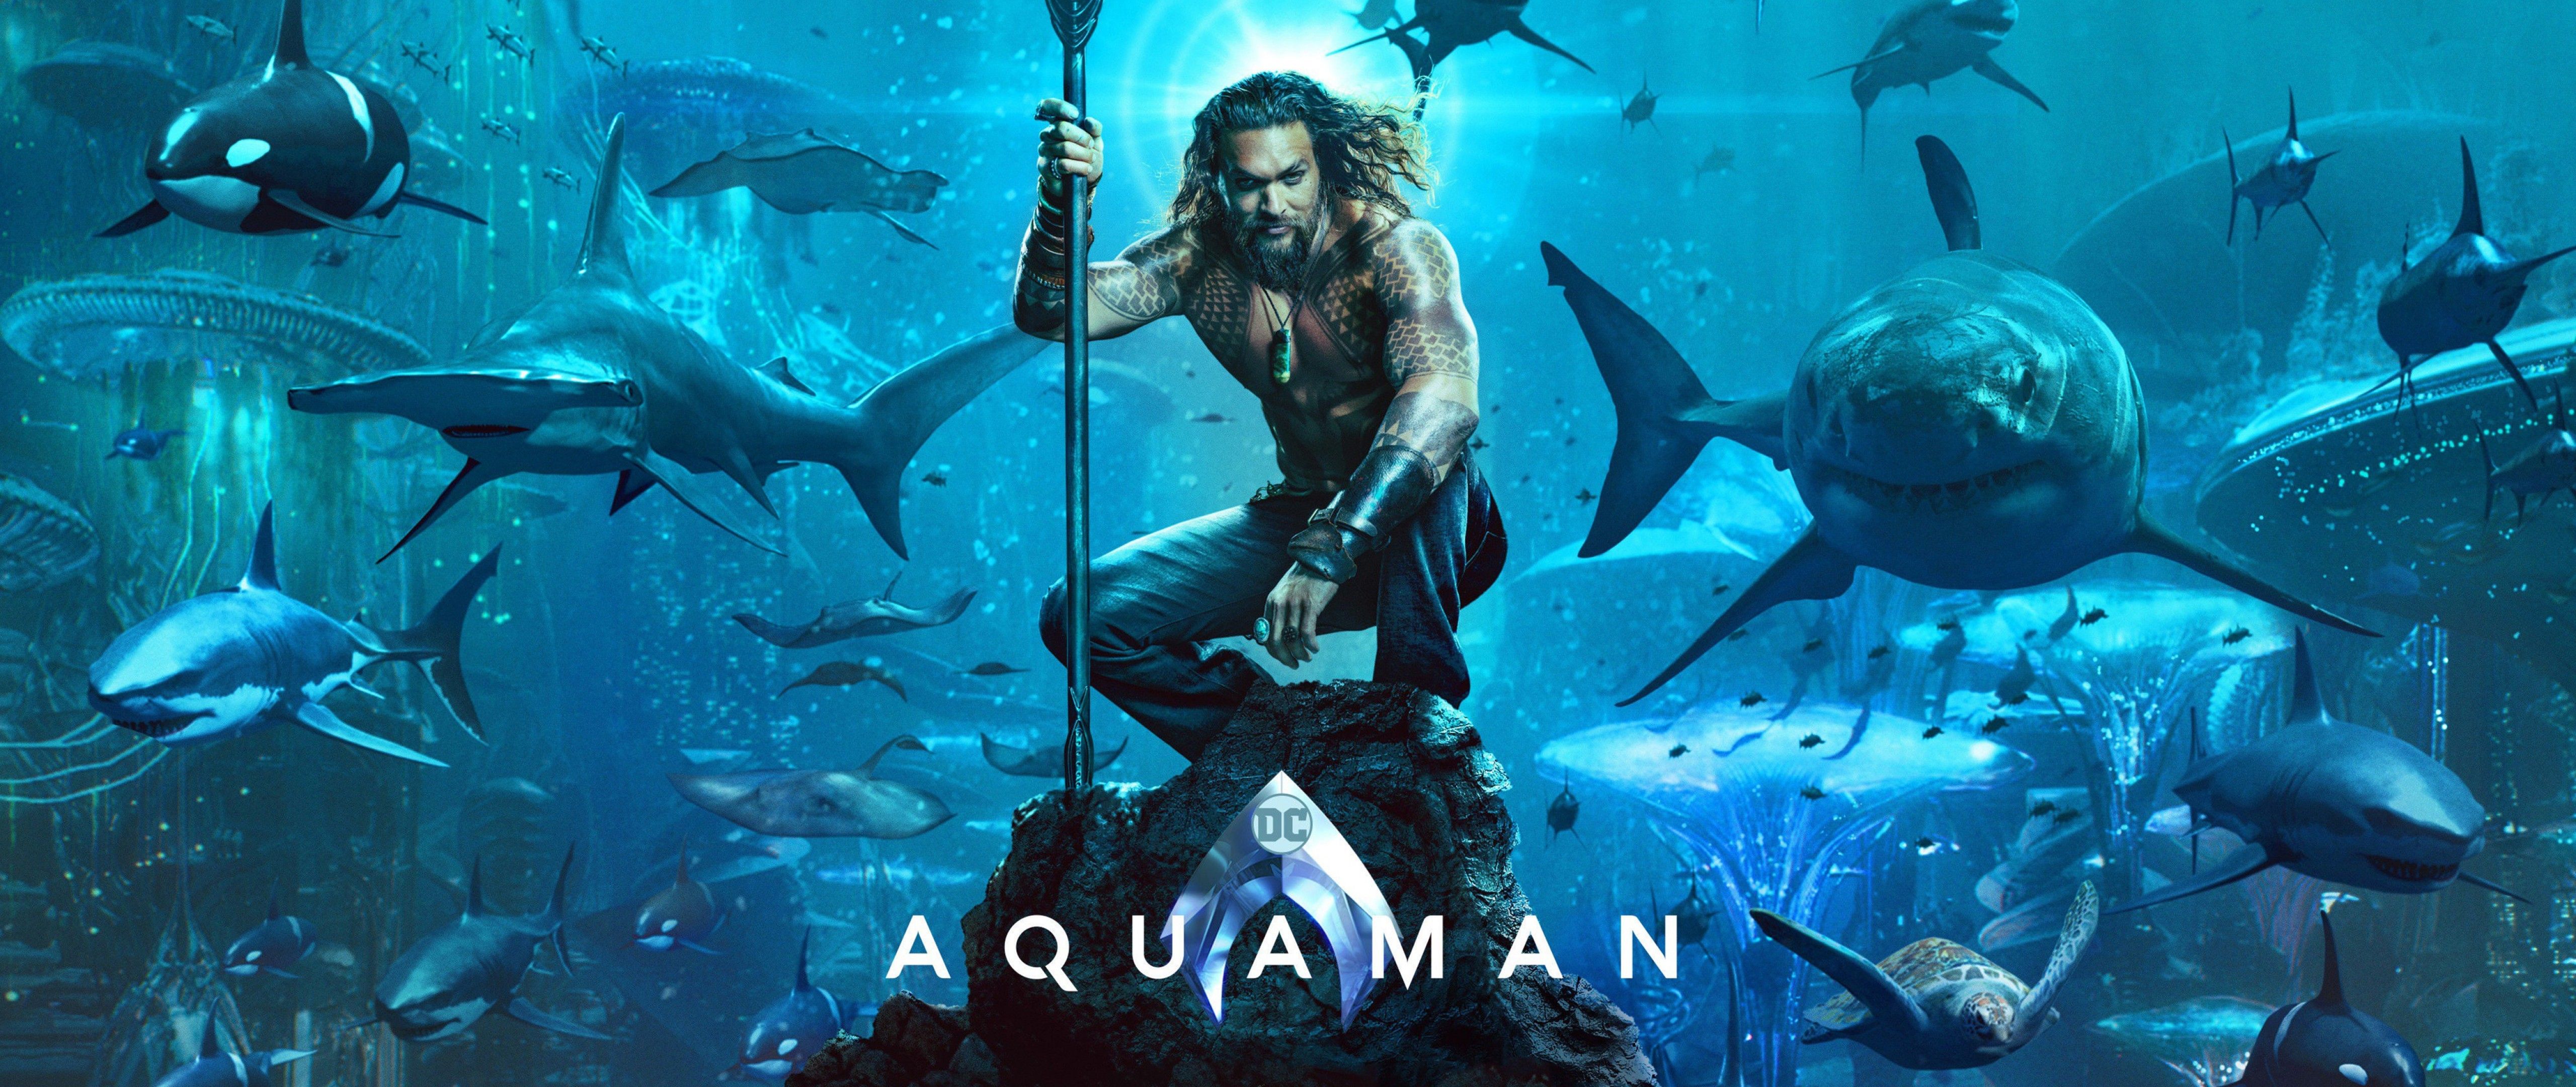 Aquaman 2018 Movie Wallpaper 4k Ultra HD Wide Tv. HD Wallpaper Mafia